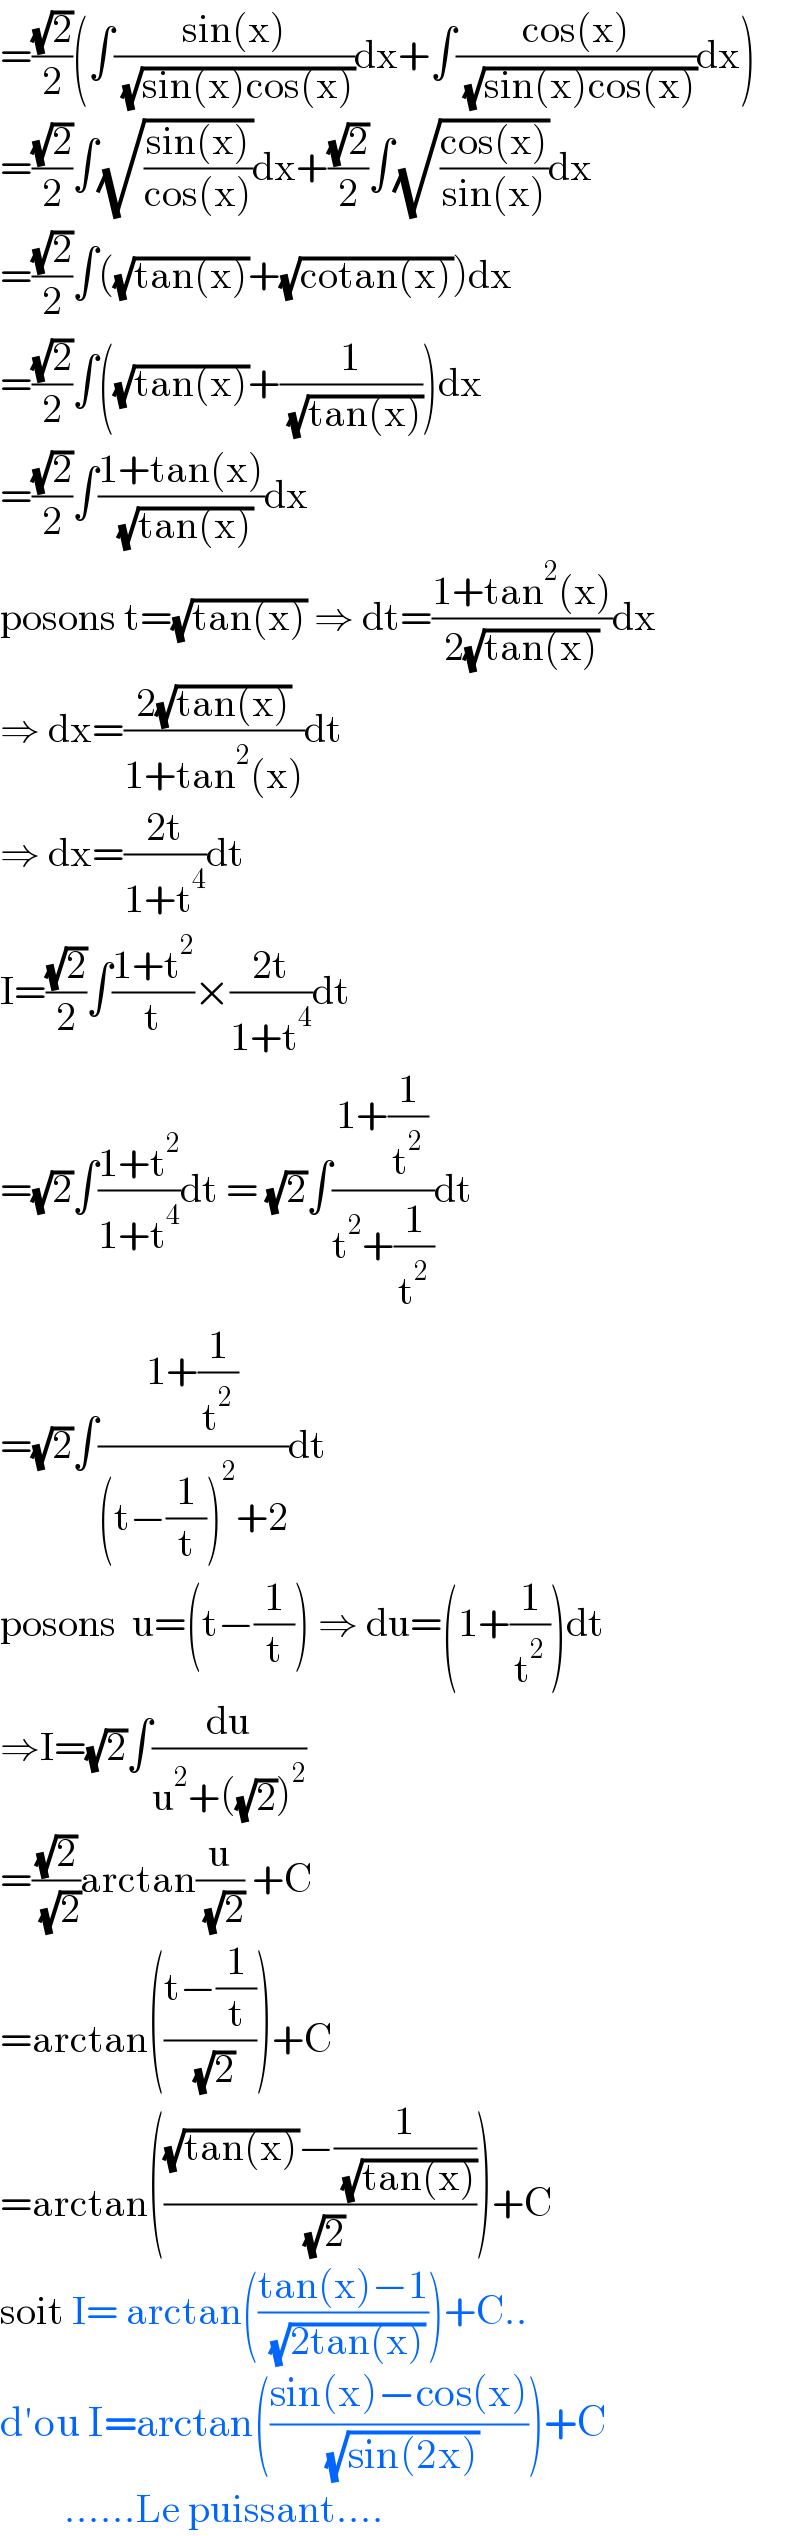 =((√2)/2)(∫((sin(x))/( (√(sin(x)cos(x)))))dx+∫((cos(x))/( (√(sin(x)cos(x)))))dx)  =((√2)/2)∫(√((sin(x))/(cos(x))))dx+((√2)/2)∫(√((cos(x))/(sin(x))))dx  =((√2)/2)∫((√(tan(x)))+(√(cotan(x))))dx  =((√2)/2)∫((√(tan(x)))+(1/( (√(tan(x))))))dx  =((√2)/2)∫((1+tan(x))/( (√(tan(x)))))dx  posons t=(√(tan(x))) ⇒ dt=((1+tan^2 (x))/(2(√(tan(x)))))dx  ⇒ dx=((2(√(tan(x))))/(1+tan^2 (x)))dt  ⇒ dx=((2t)/(1+t^4 ))dt  I=((√2)/2)∫((1+t^2 )/t)×((2t)/(1+t^4 ))dt  =(√2)∫((1+t^2 )/(1+t^4 ))dt = (√2)∫((1+(1/t^2 ))/(t^2 +(1/t^2 )))dt  =(√2)∫((1+(1/t^2 ))/((t−(1/t))^2 +2))dt  posons  u=(t−(1/t)) ⇒ du=(1+(1/t^2 ))dt  ⇒I=(√2)∫(du/(u^2 +((√2))^2 ))  =((√2)/( (√2)))arctan(u/( (√2))) +C  =arctan(((t−(1/t))/( (√2))))+C  =arctan((((√(tan(x)))−(1/( (√(tan(x))))))/( (√2))))+C  soit I= arctan(((tan(x)−1)/( (√(2tan(x))))))+C..  d′ou I=arctan(((sin(x)−cos(x))/( (√(sin(2x))))))+C          ......Le puissant....  